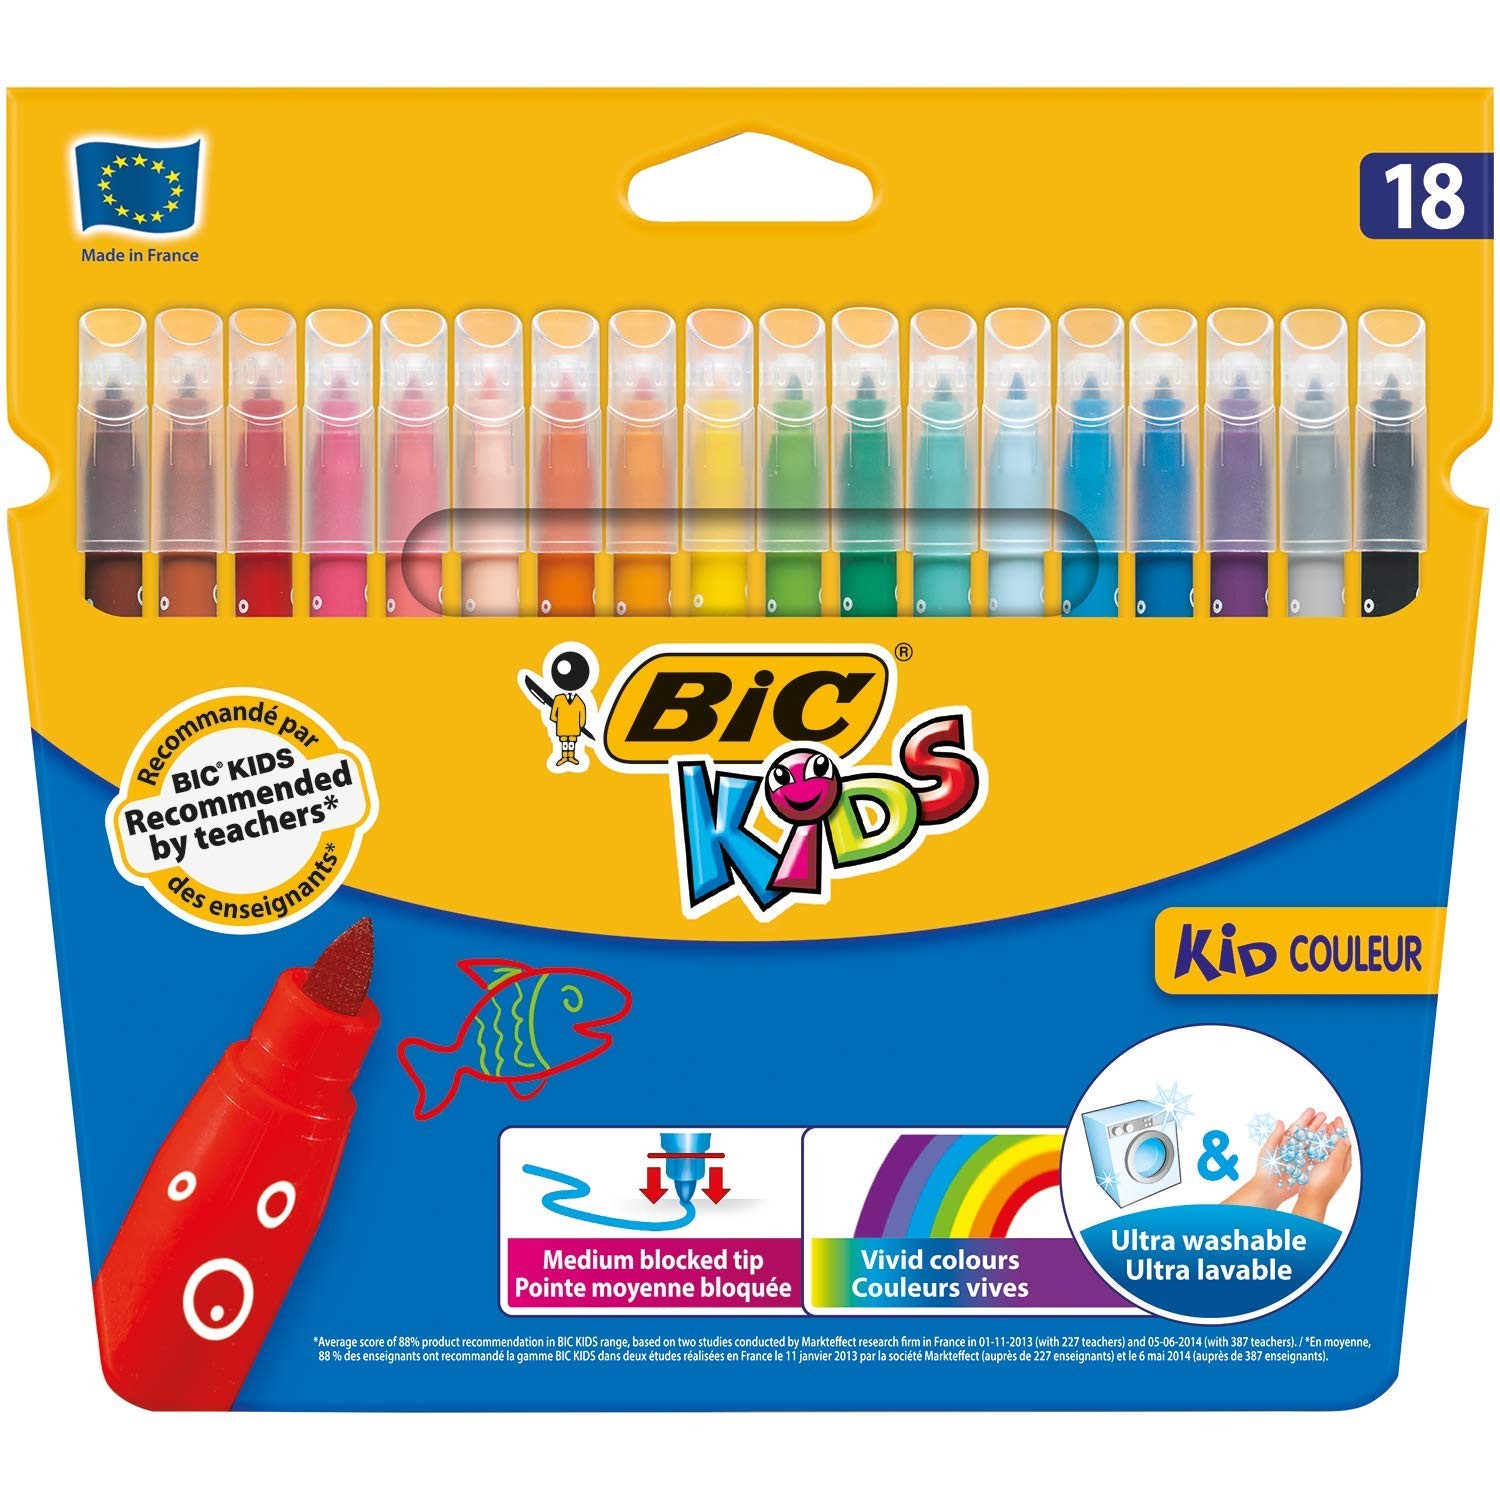 Pochette de 12 feutres de coloriage Pour BéBé - KID Couleur - Bic Kids